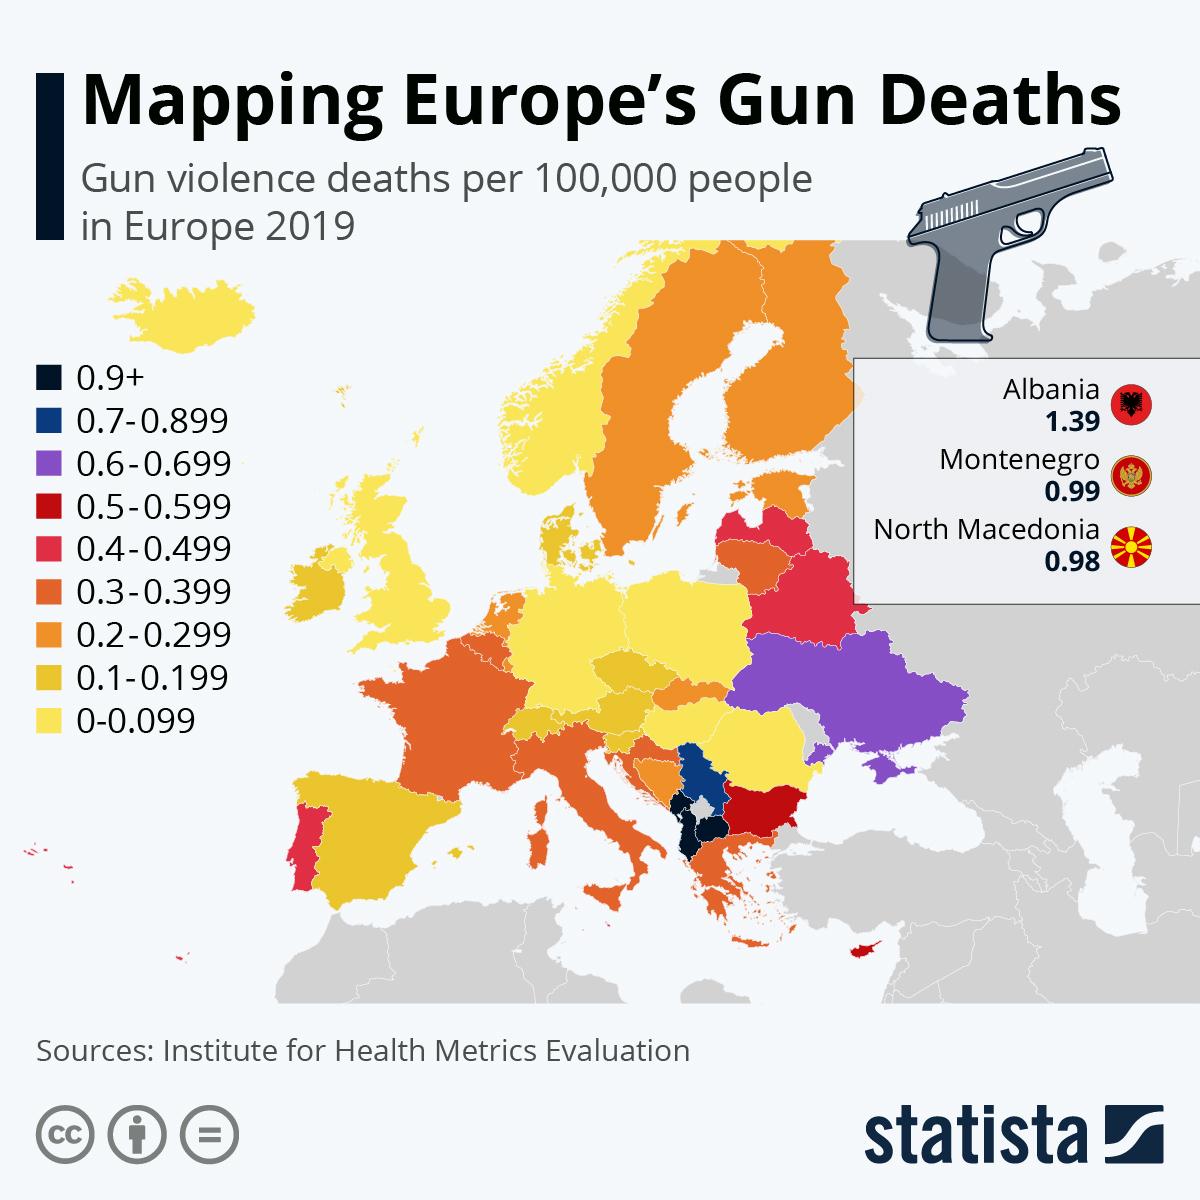 MAPIRANJE EVROPE: Crna Gora pri samom vrhu po smrtnosti od vatrenog oružja